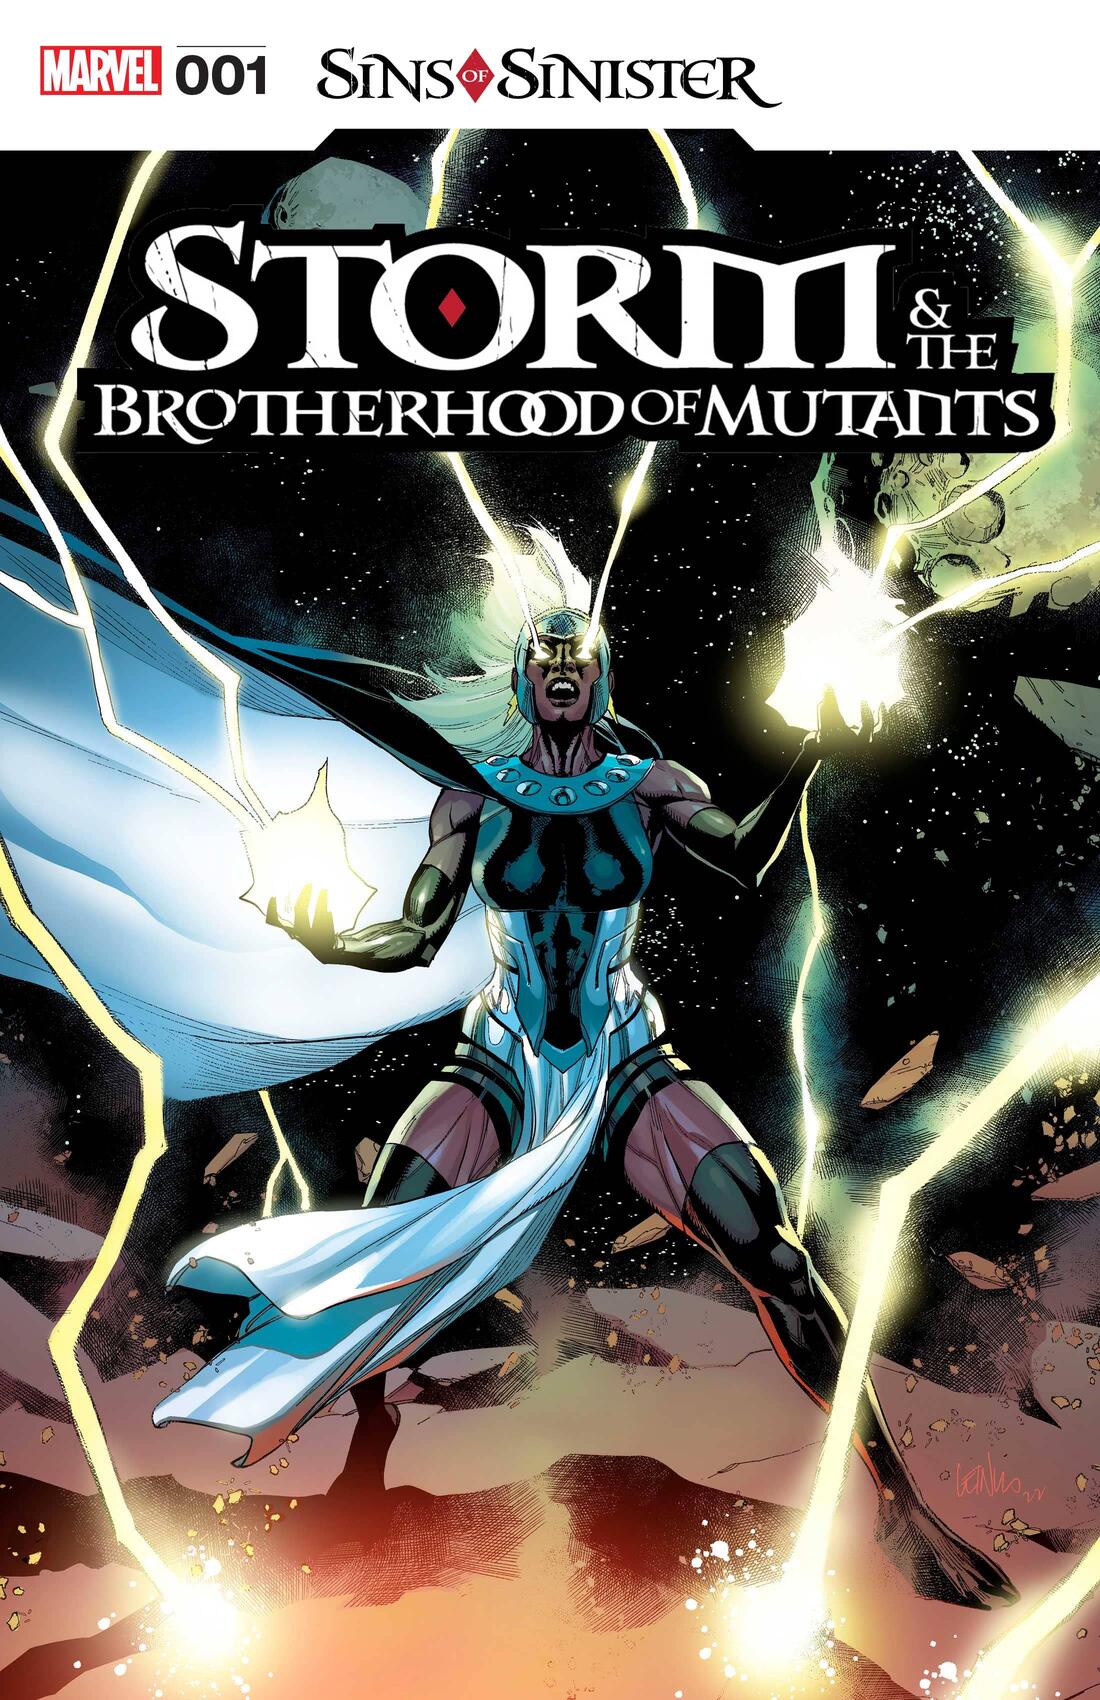 Quais são os Pecados de Sinistro - X-Men - Marvel Comics - Storm and the Brotherhood of Mutants #1 - Blog Farofeiros